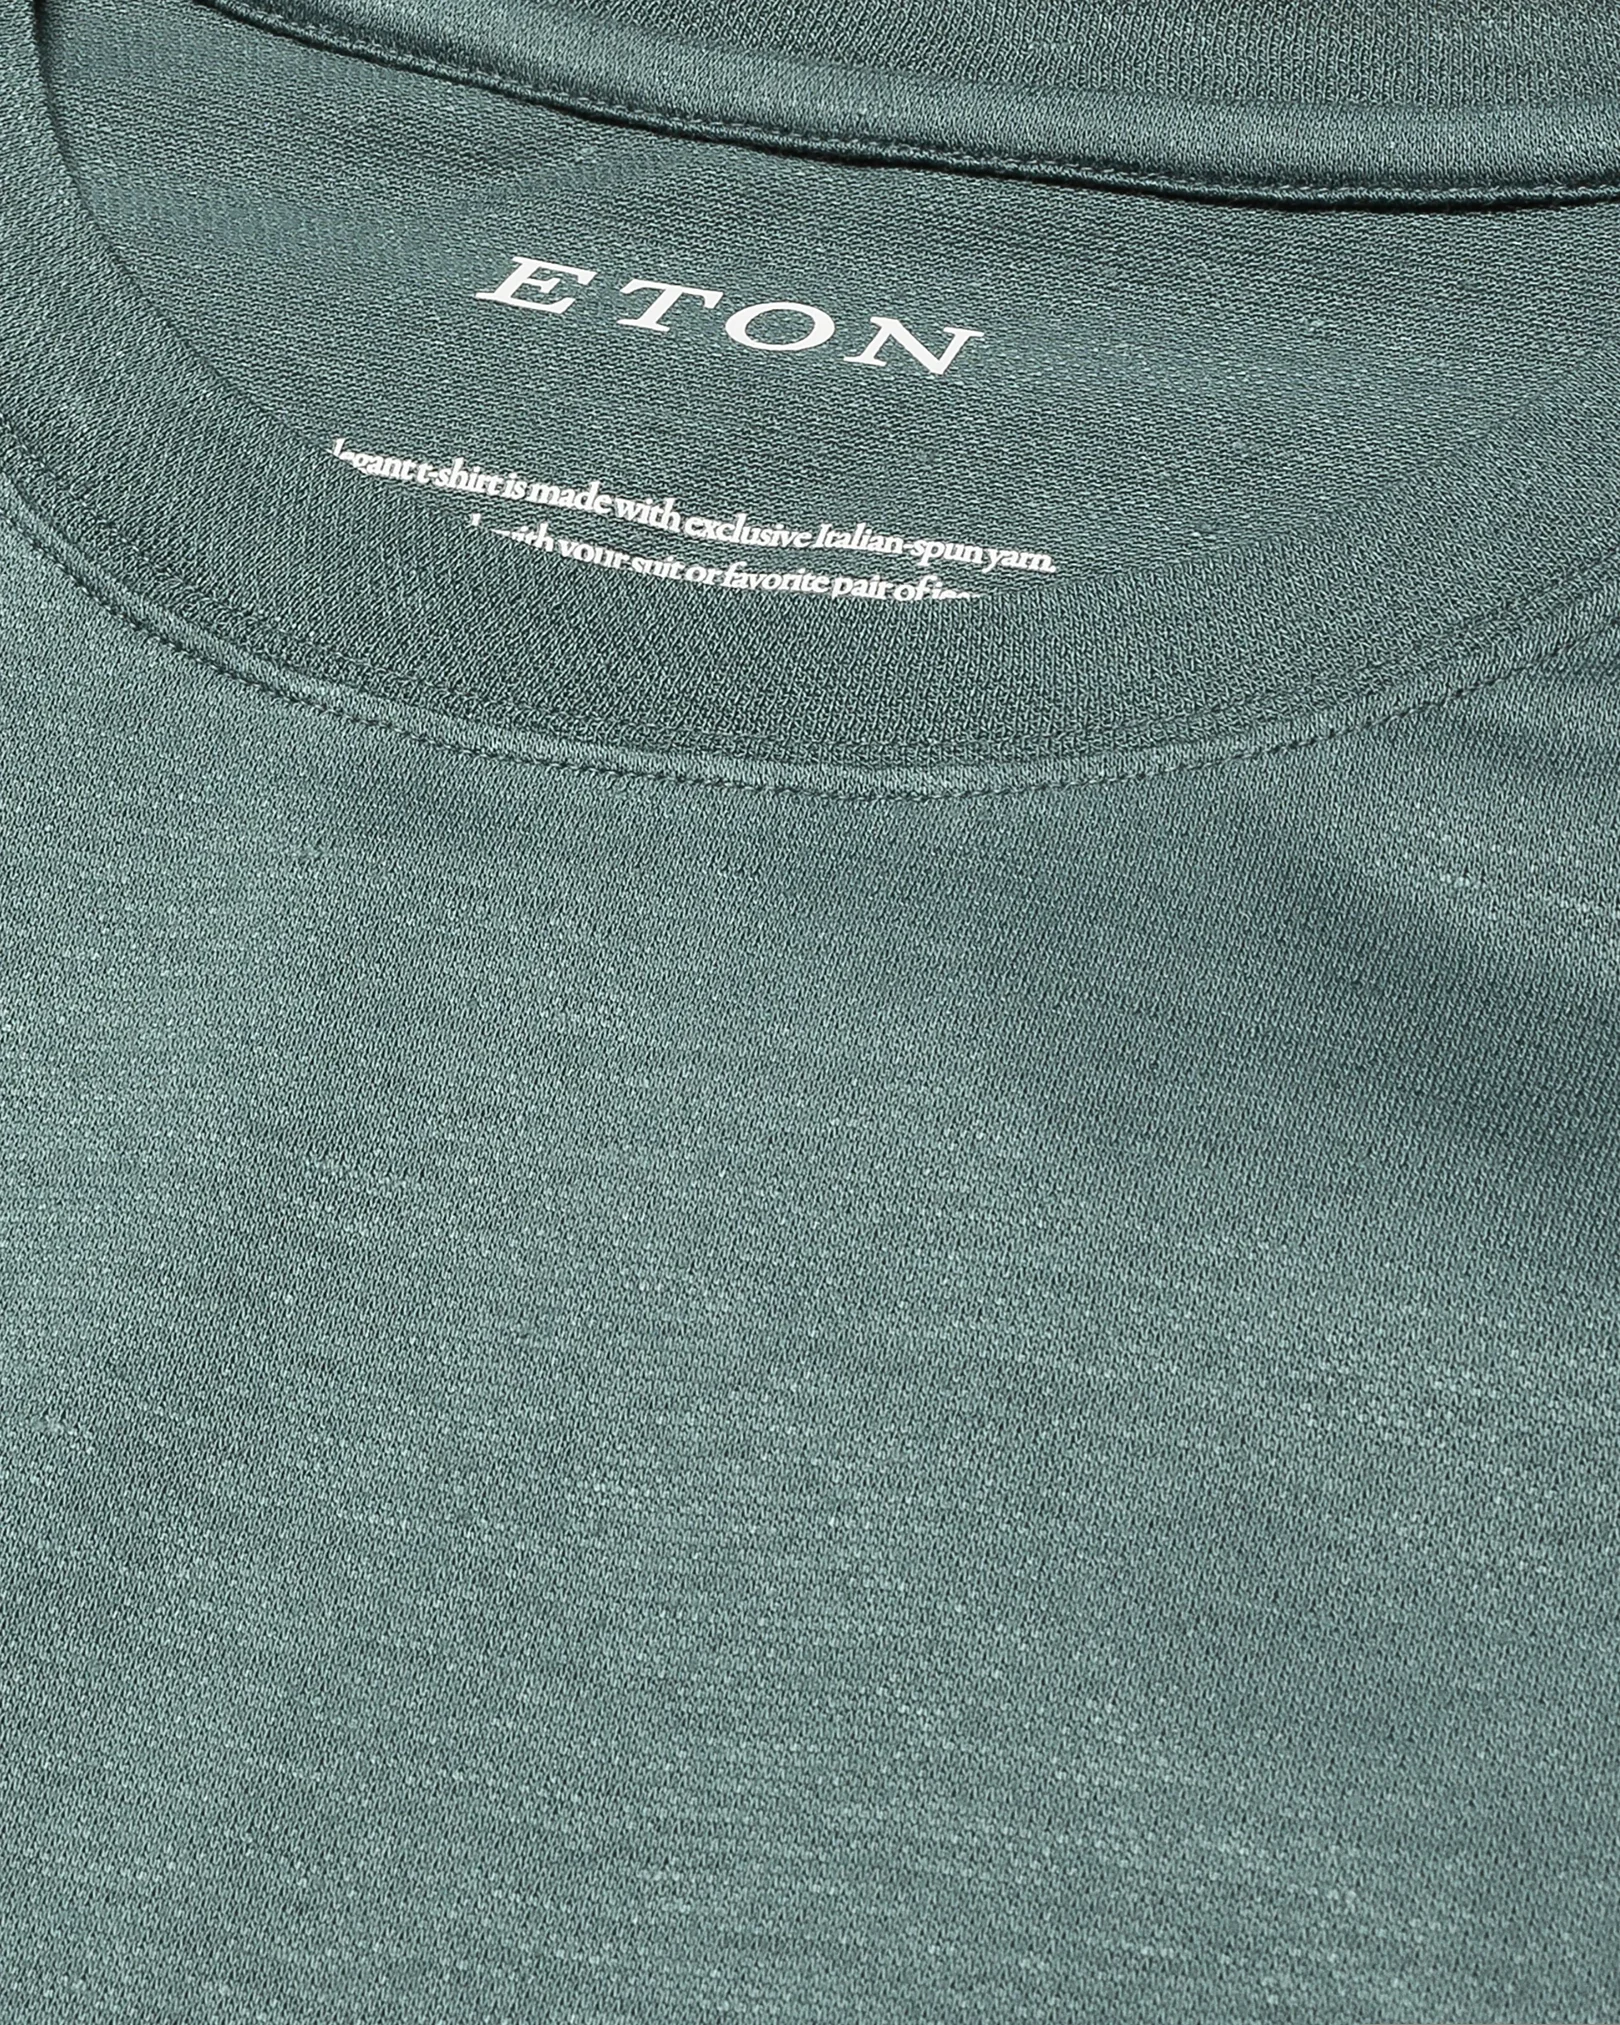 Eton - dark green pique t shirt short sleeve boxfit t shirt